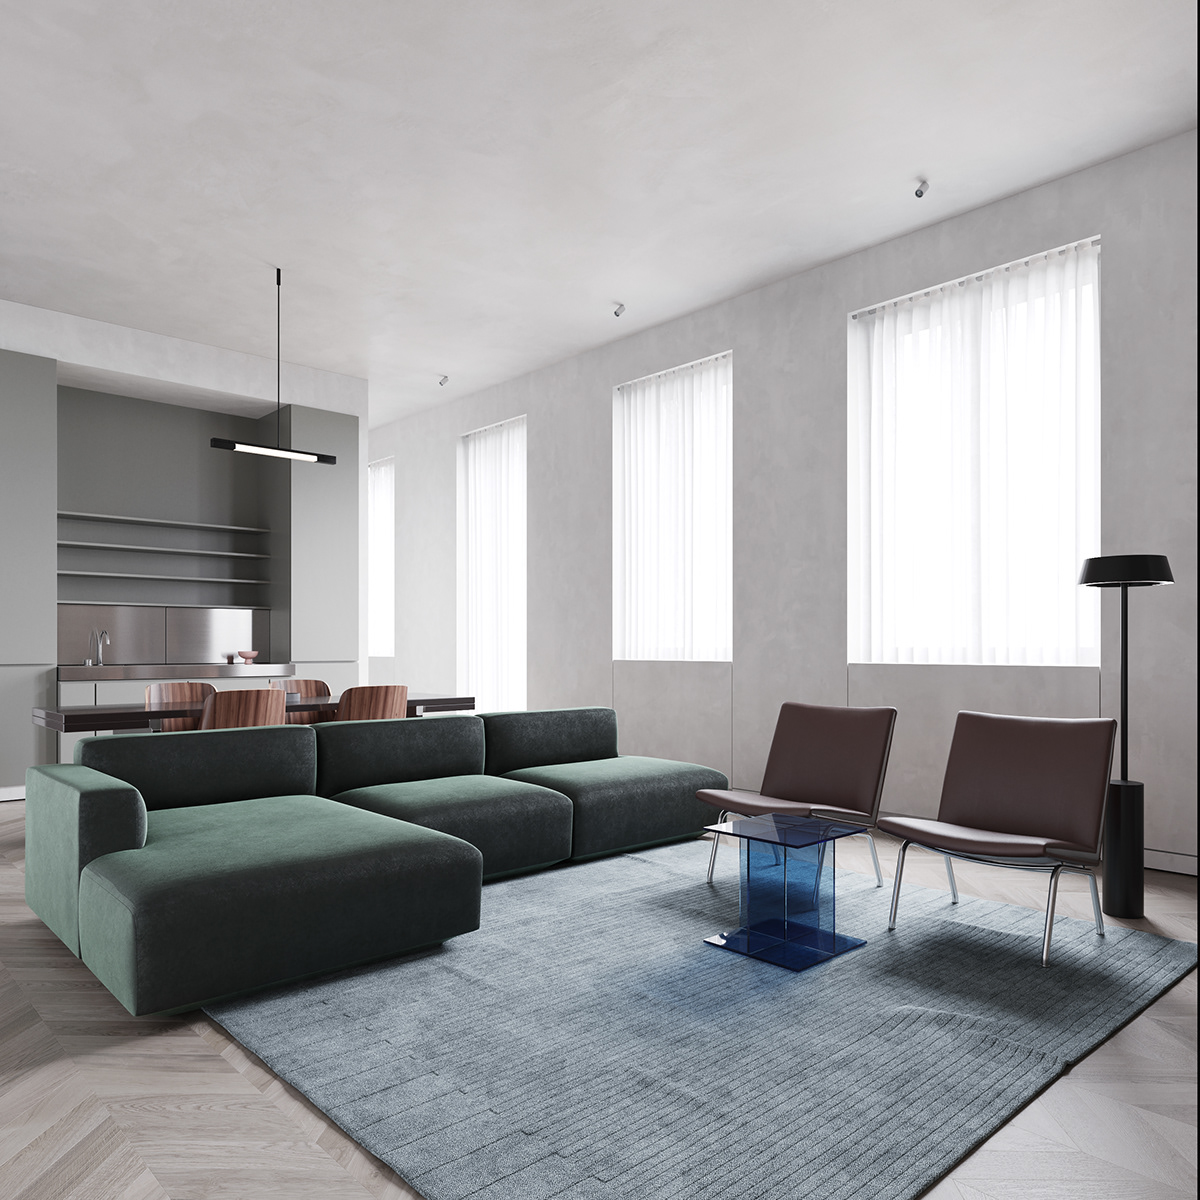 Interior interiordesign architecture apartment furniture